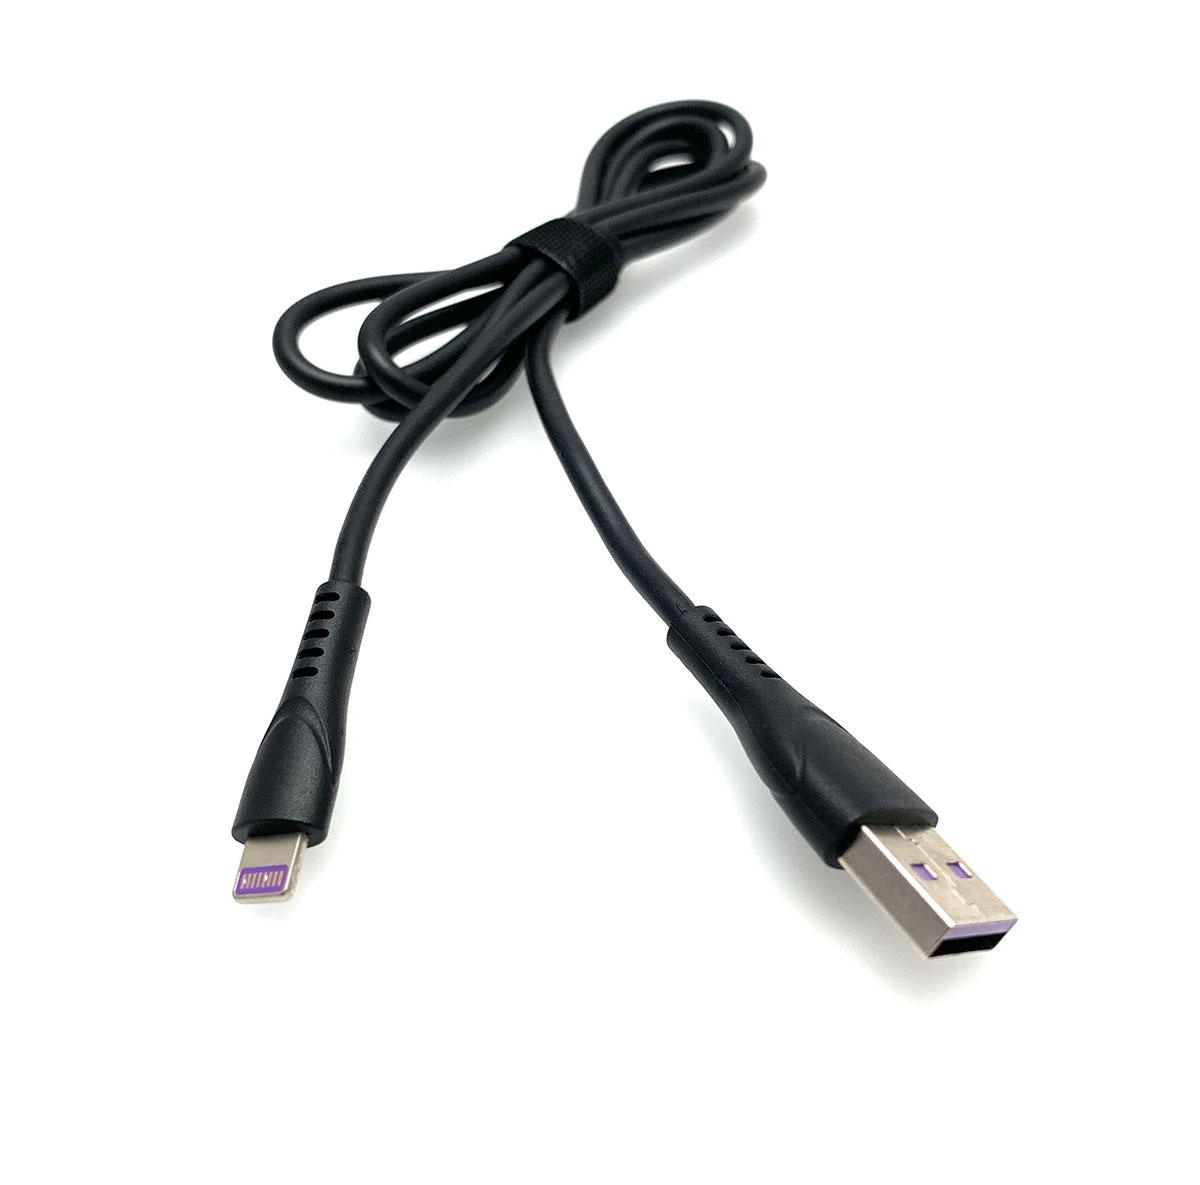 USB Дата-кабель "R18" APPLE Lightning 8-pin силиконовый эластичный, морозоустойчивый, 1 метр черного цвета, фиолетовые контакты.